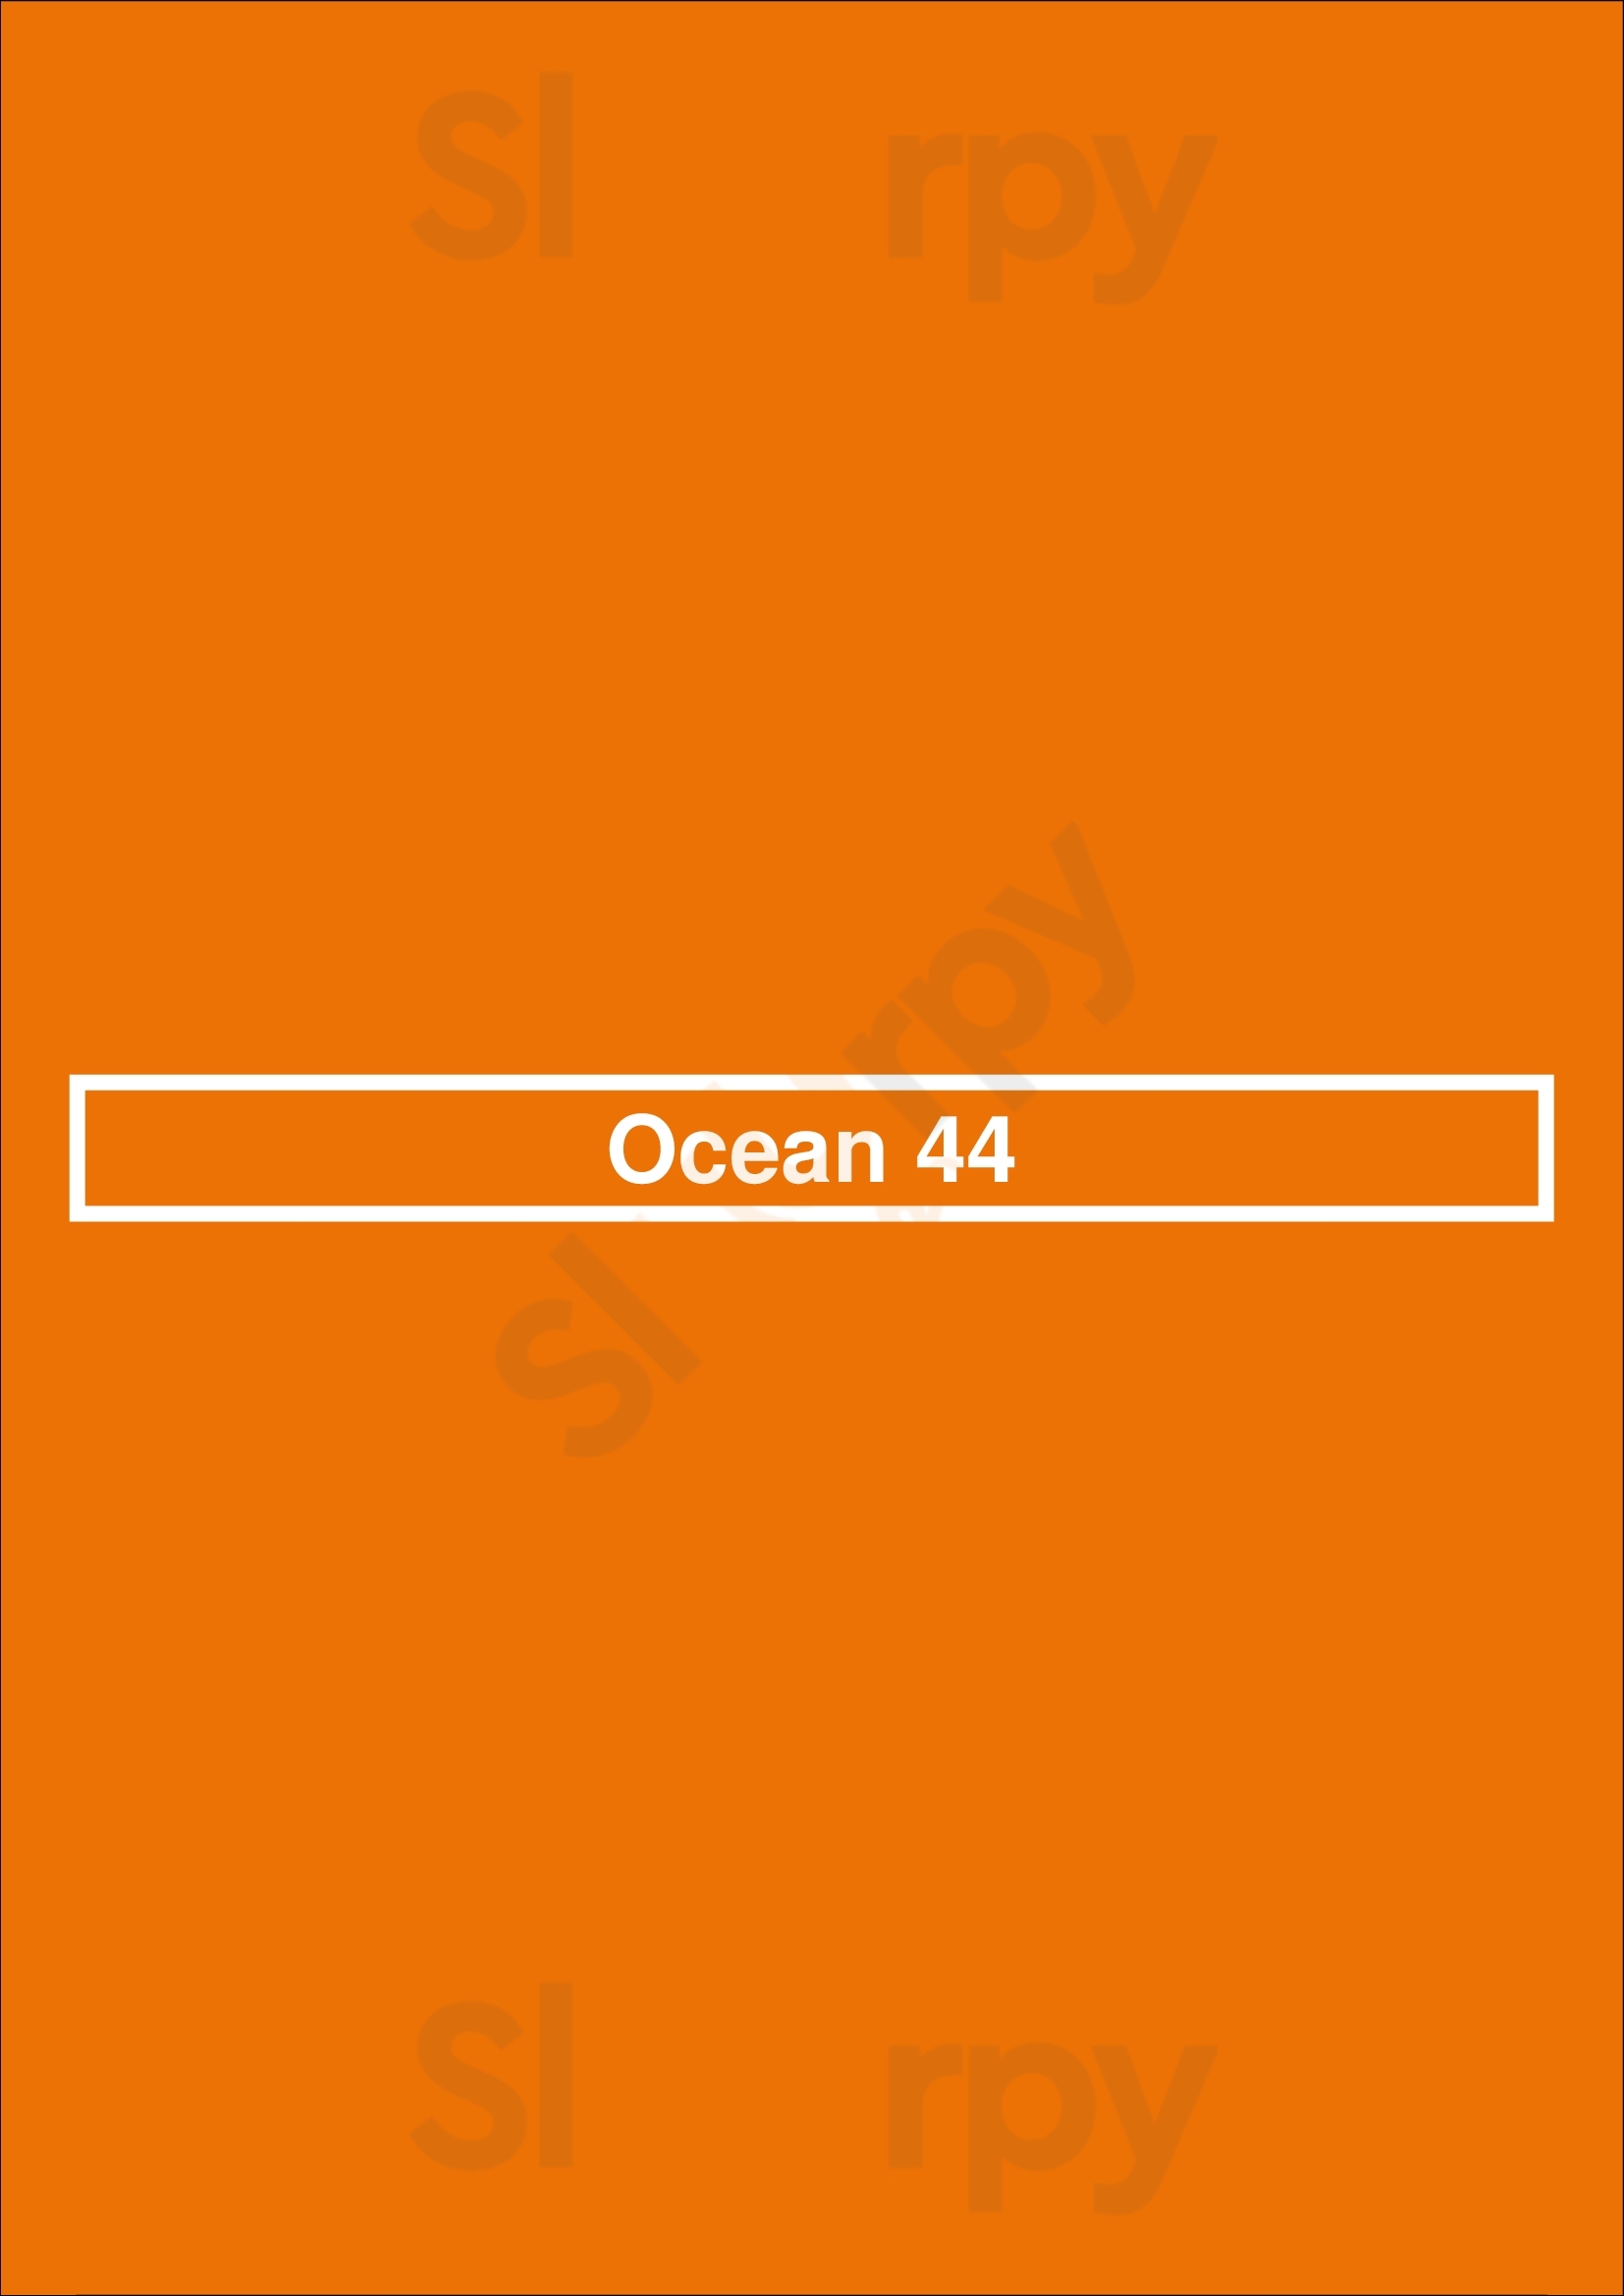 Ocean 44 Scottsdale Menu - 1